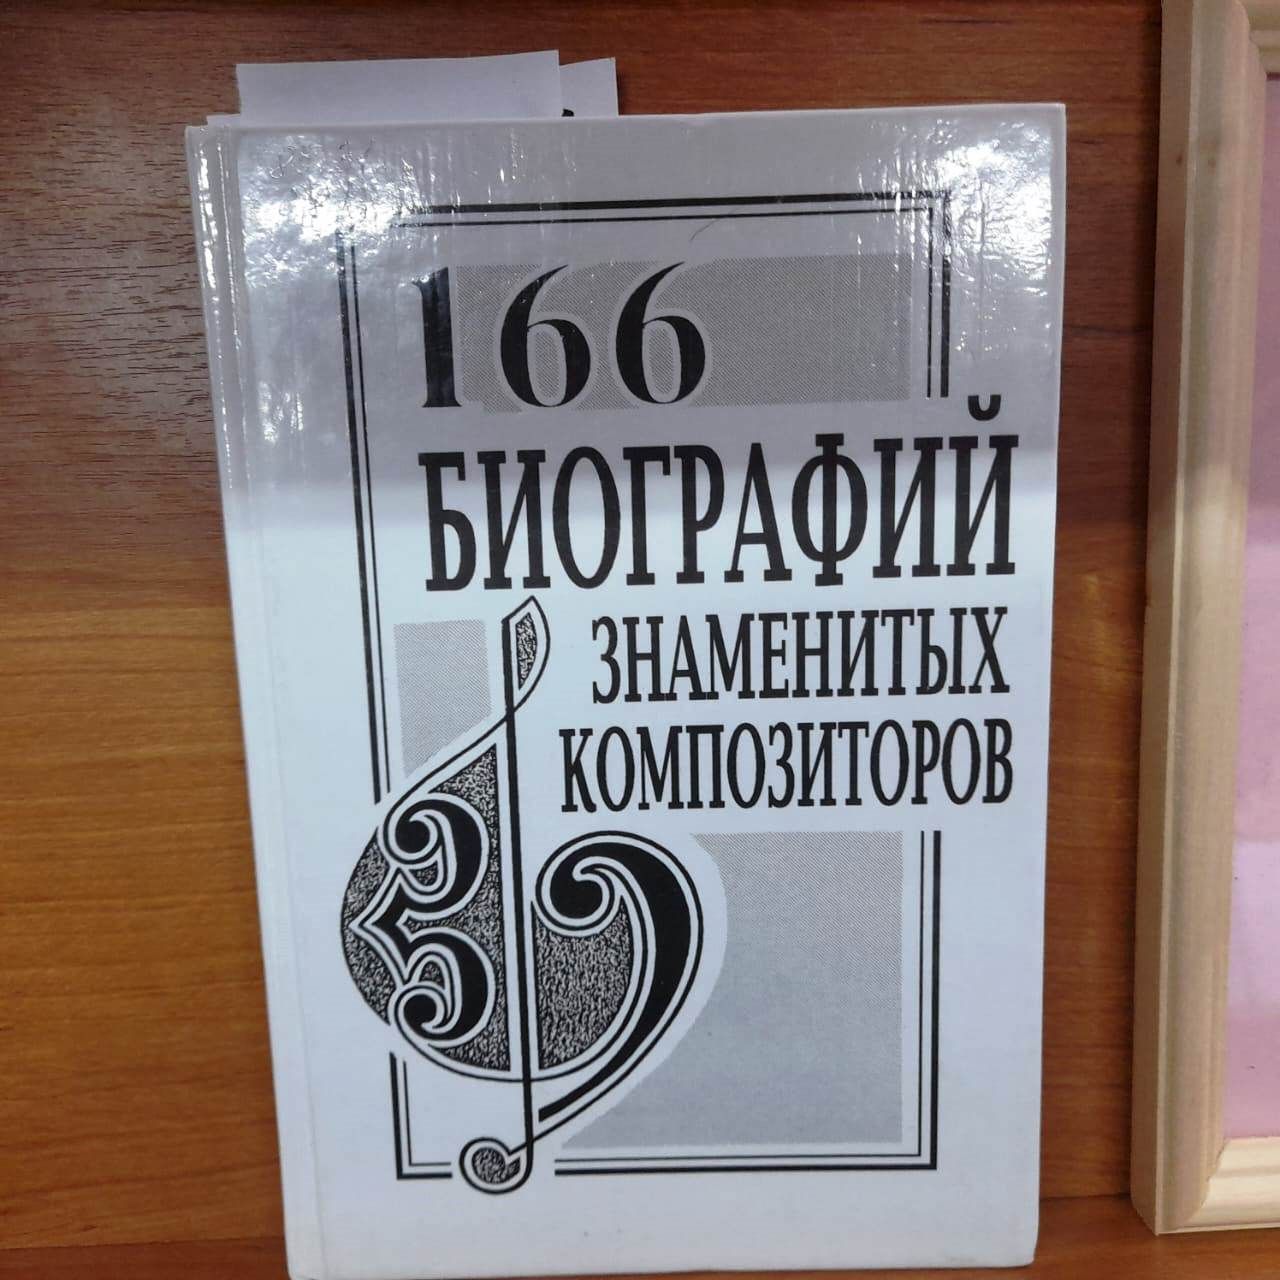 Книжная выставка «Музыкальный мир России» оформлена в Лаишевской библиотеке